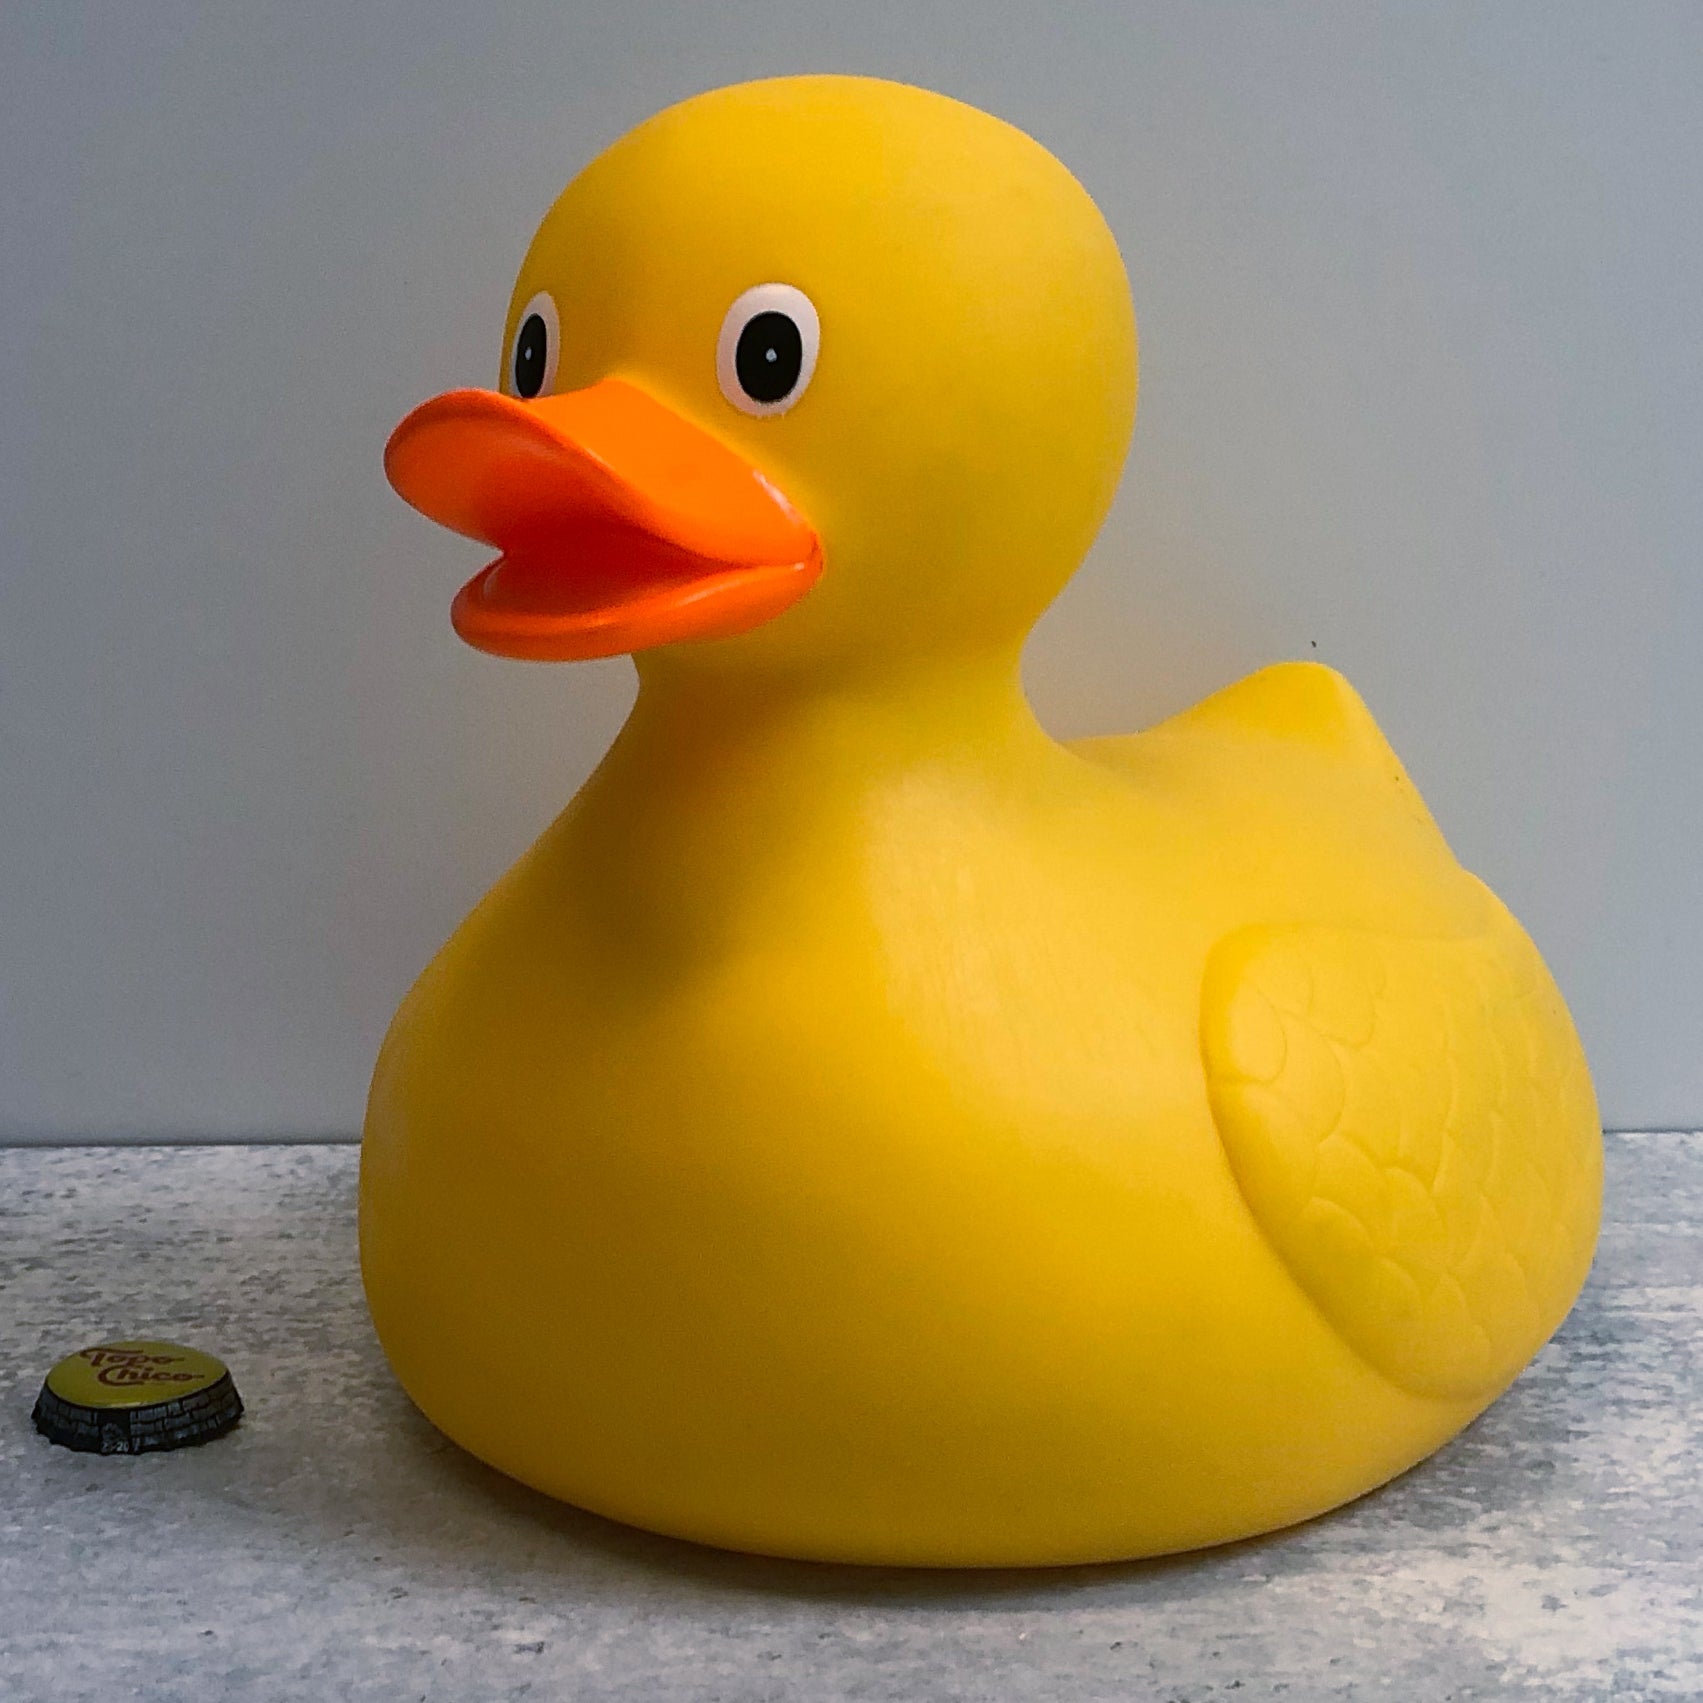  Jumbo Rubber Duck Bath Toy - Giant Ducks Big Duckie